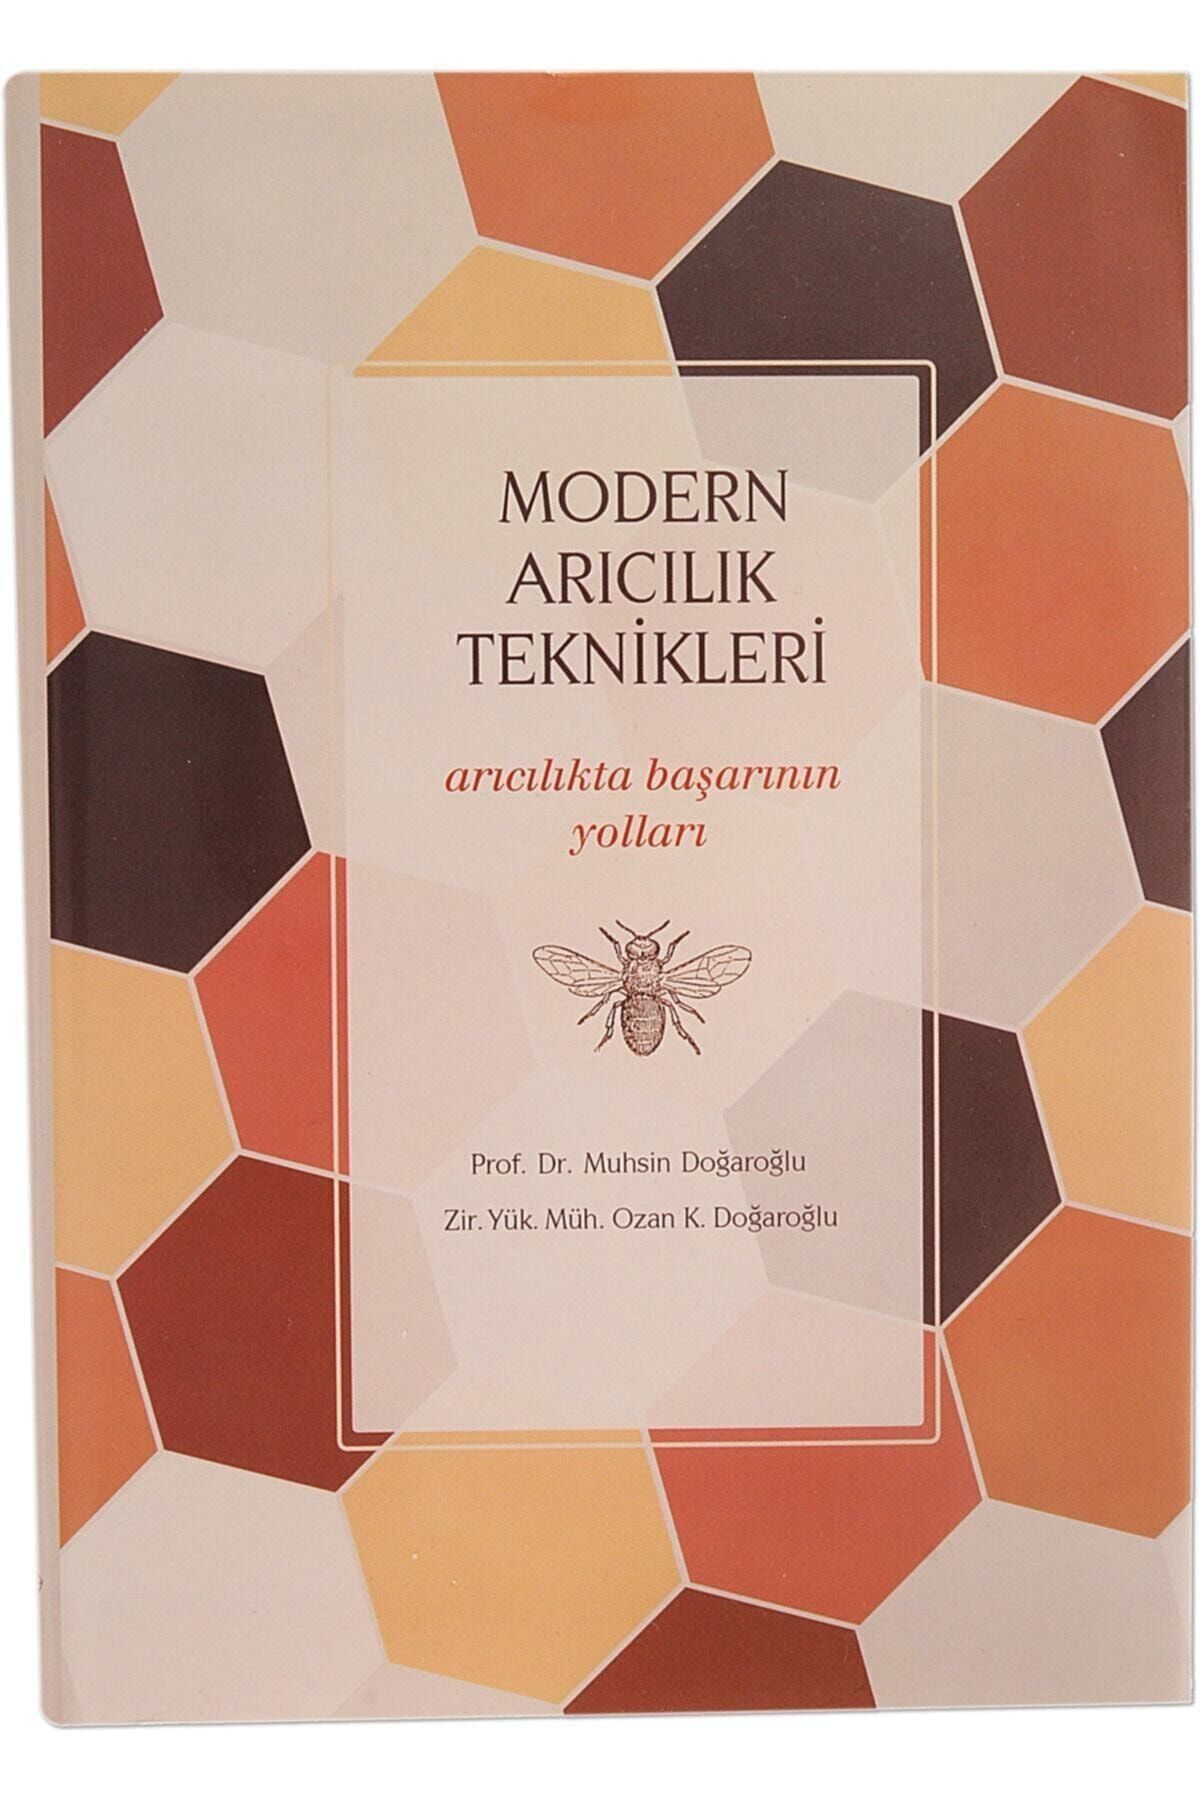 Avrasya Arıcılık Modern Arıcılık Teknikleri Kitabı (prof.dr.muhsin Doğaroğlu) AAV00001214